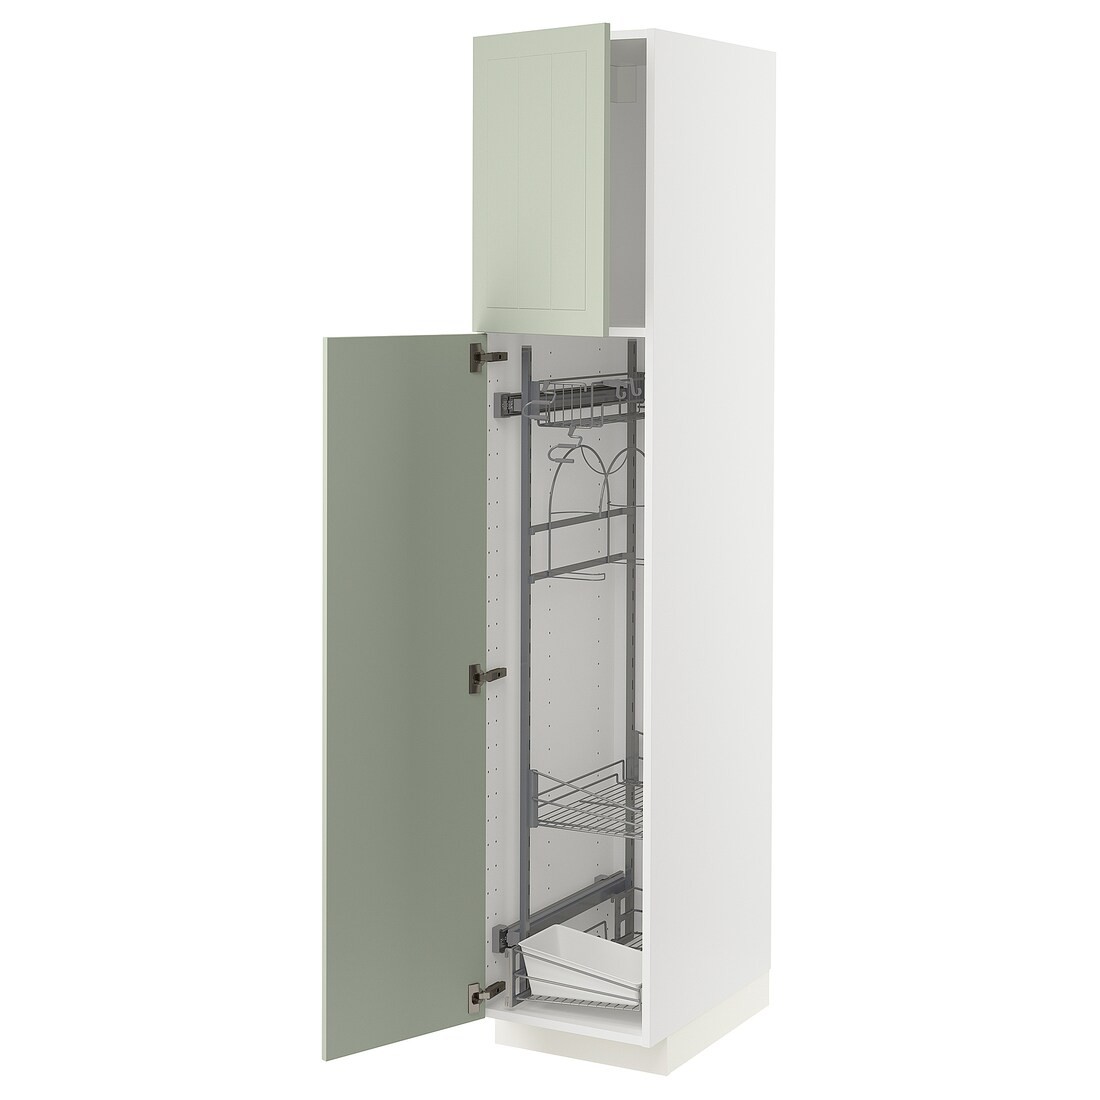 IKEA METOD МЕТОД Высокий шкаф с отделением для аксессуаров для уборки, белый / Stensund светло-зеленый, 40x60x200 см 29486845 | 294.868.45